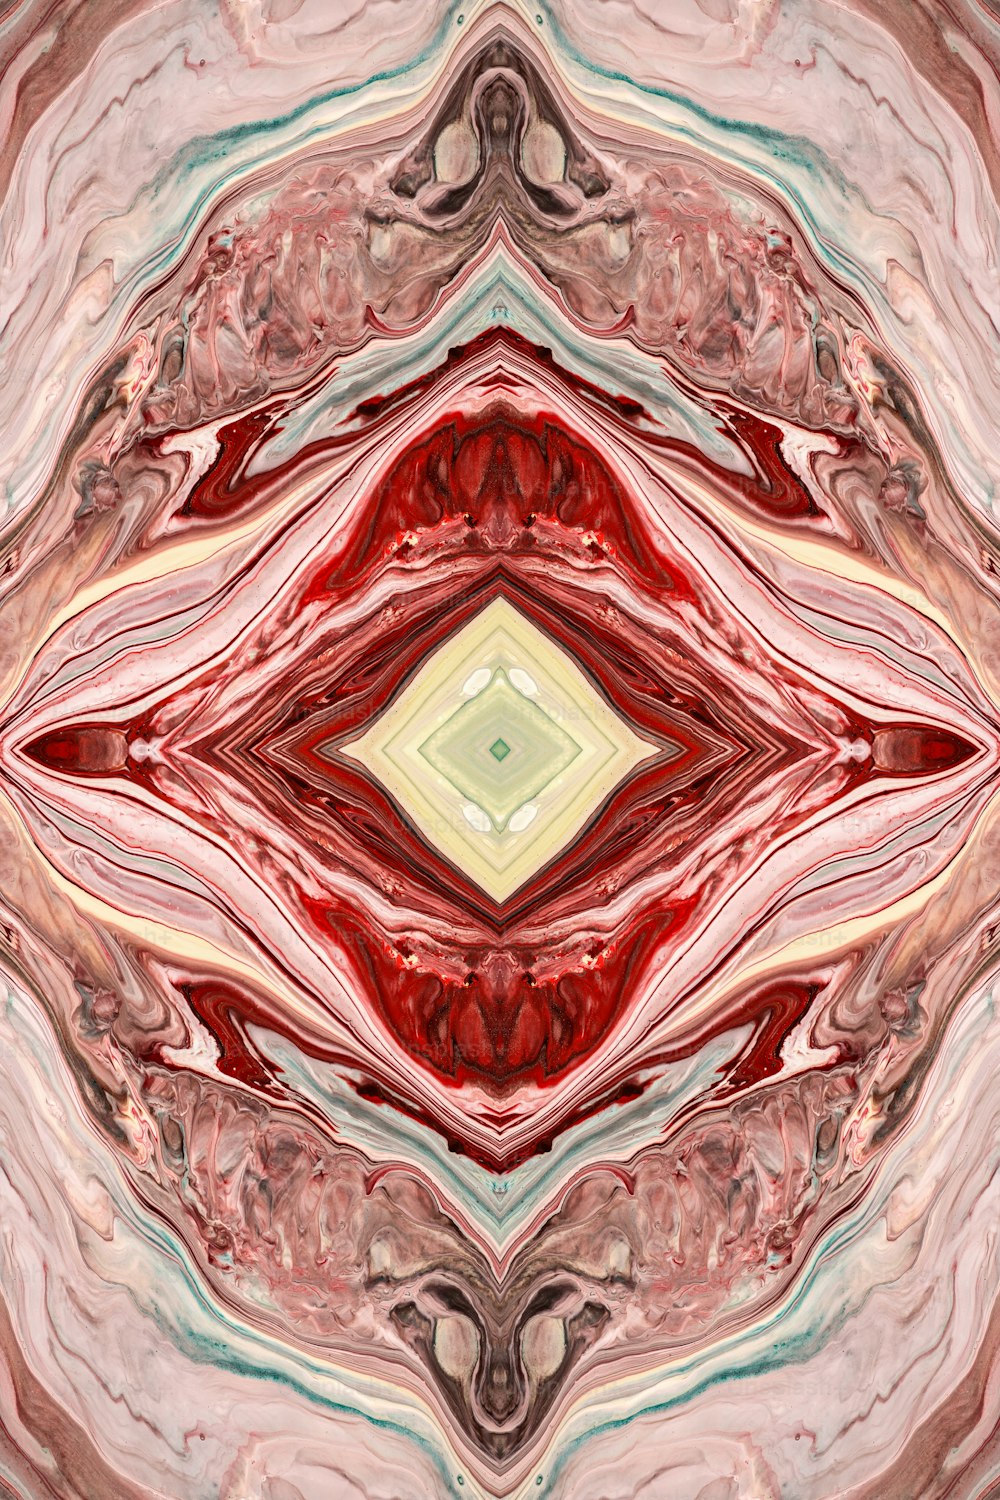 Una imagen abstracta de un objeto rojo y blanco